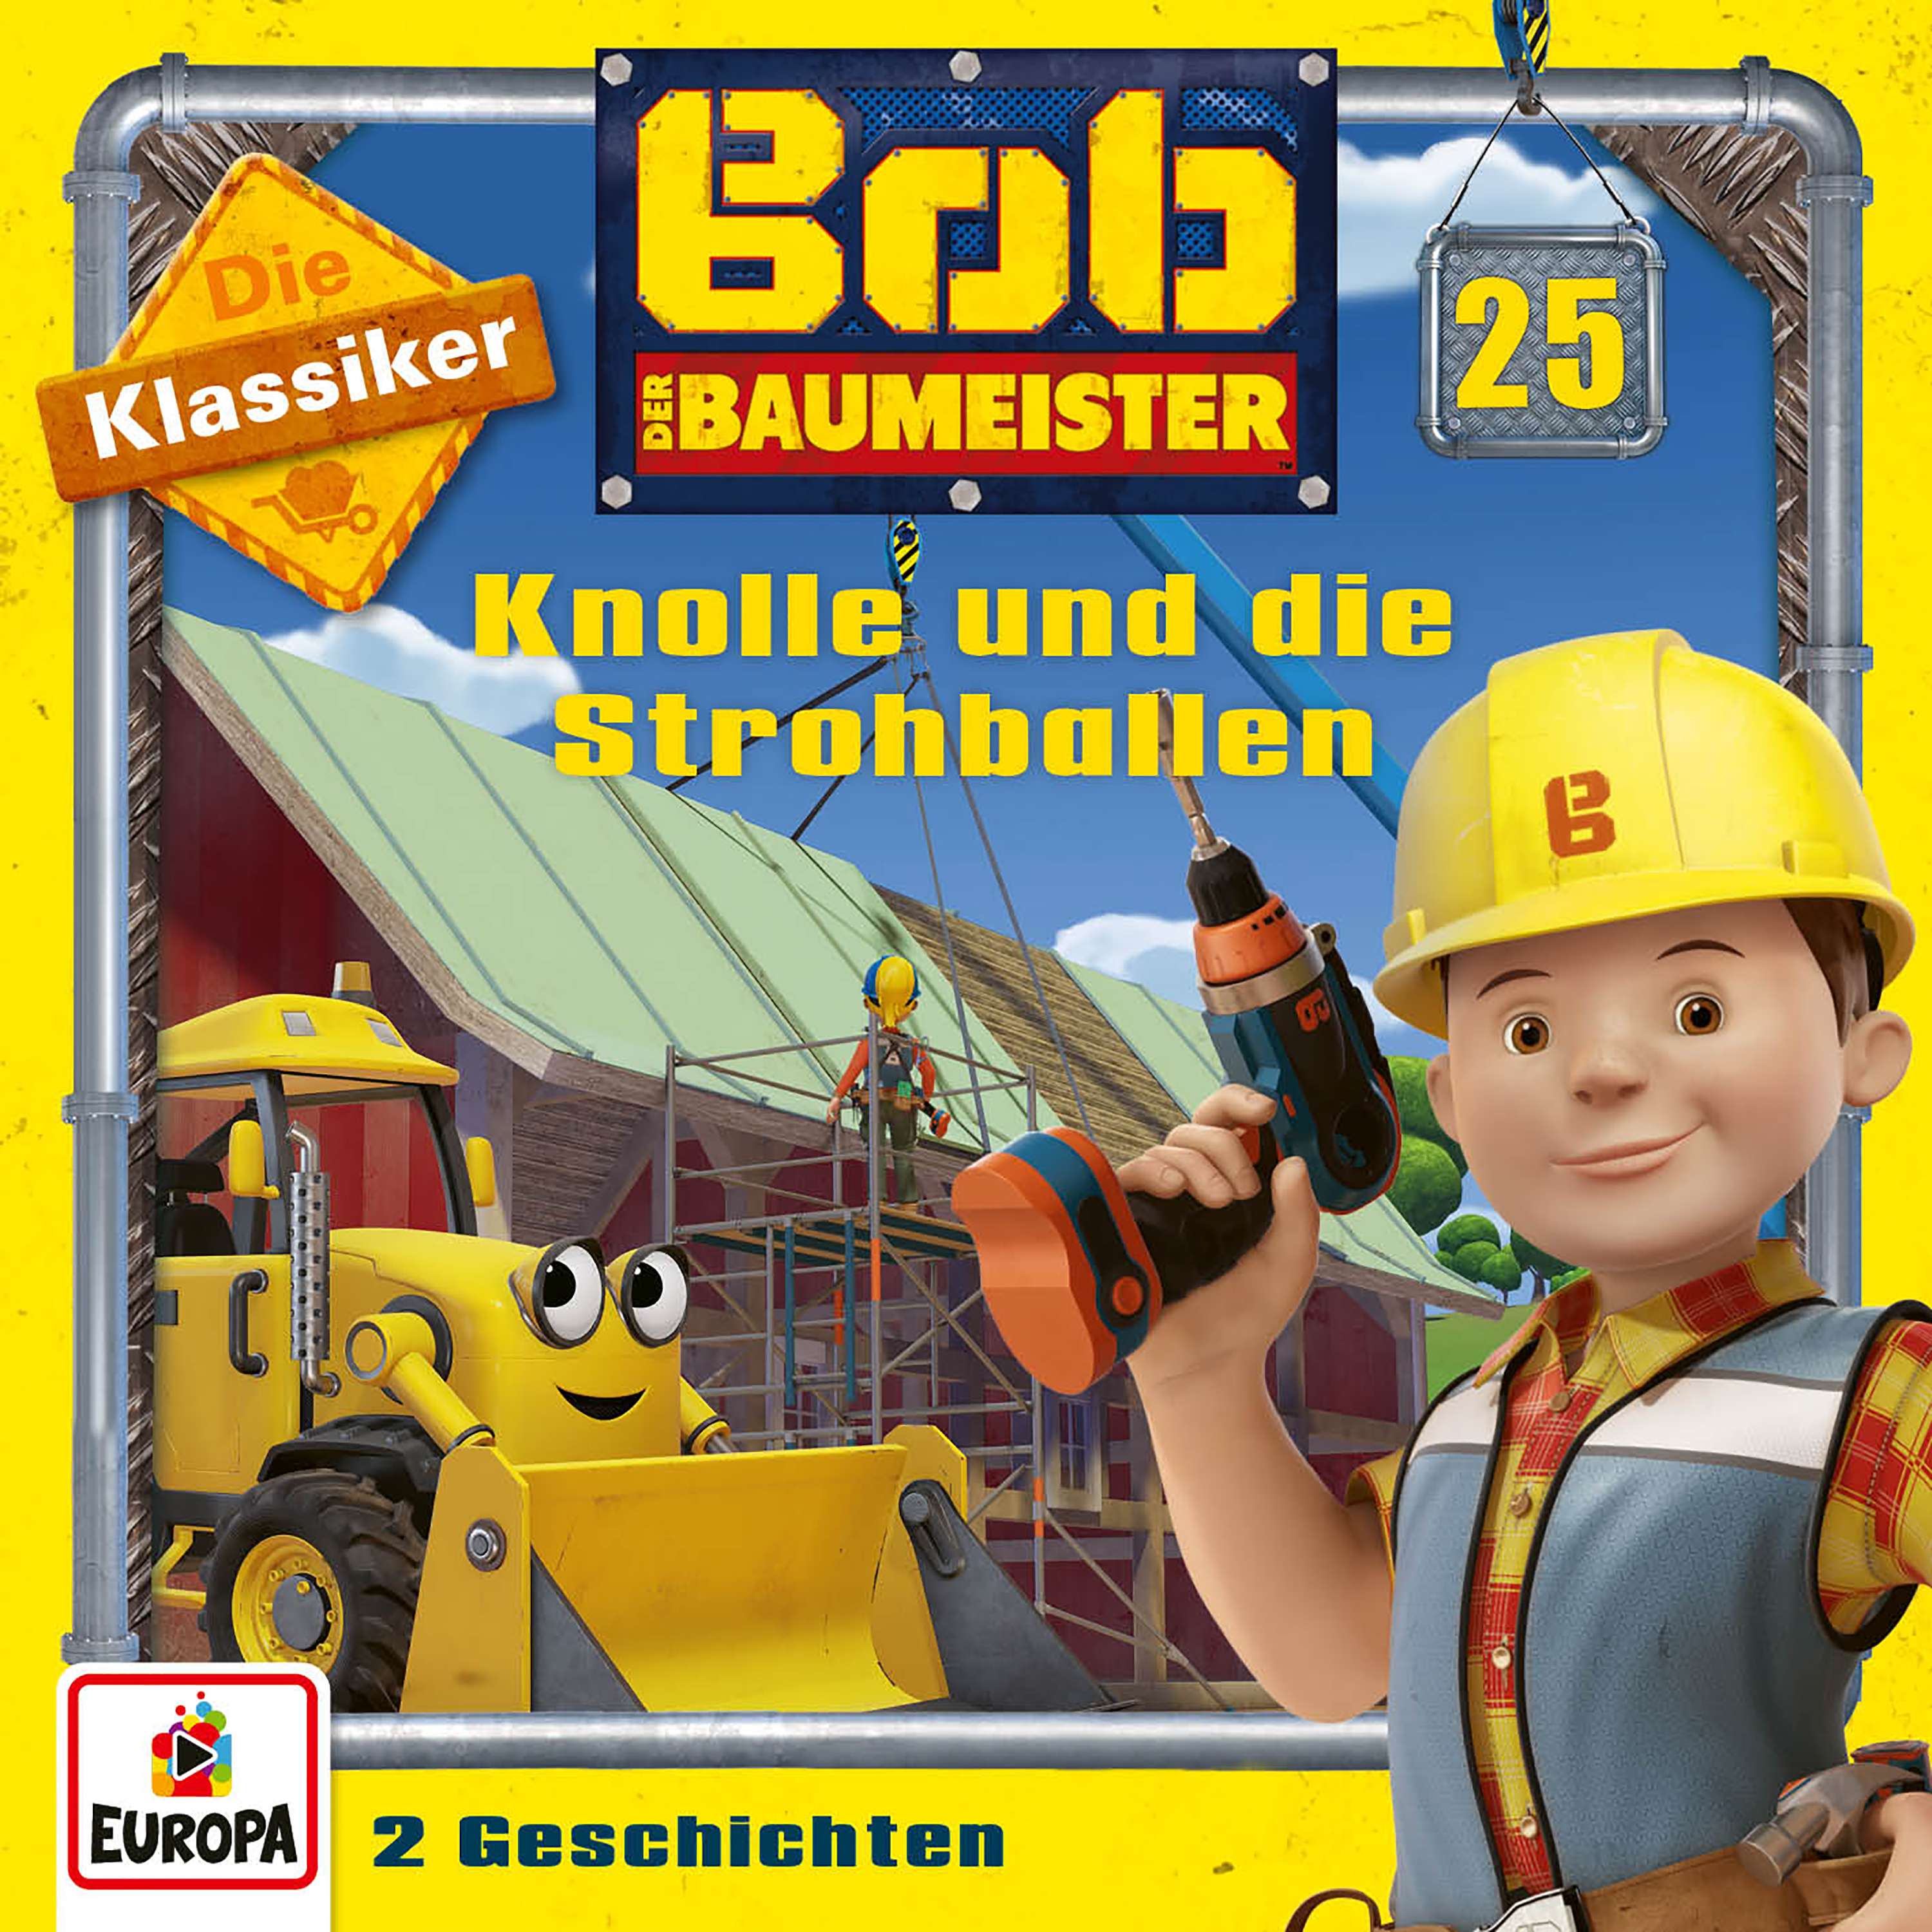 Bob der Baumeister: Knolle und die Strohballen (Die Klassiker)